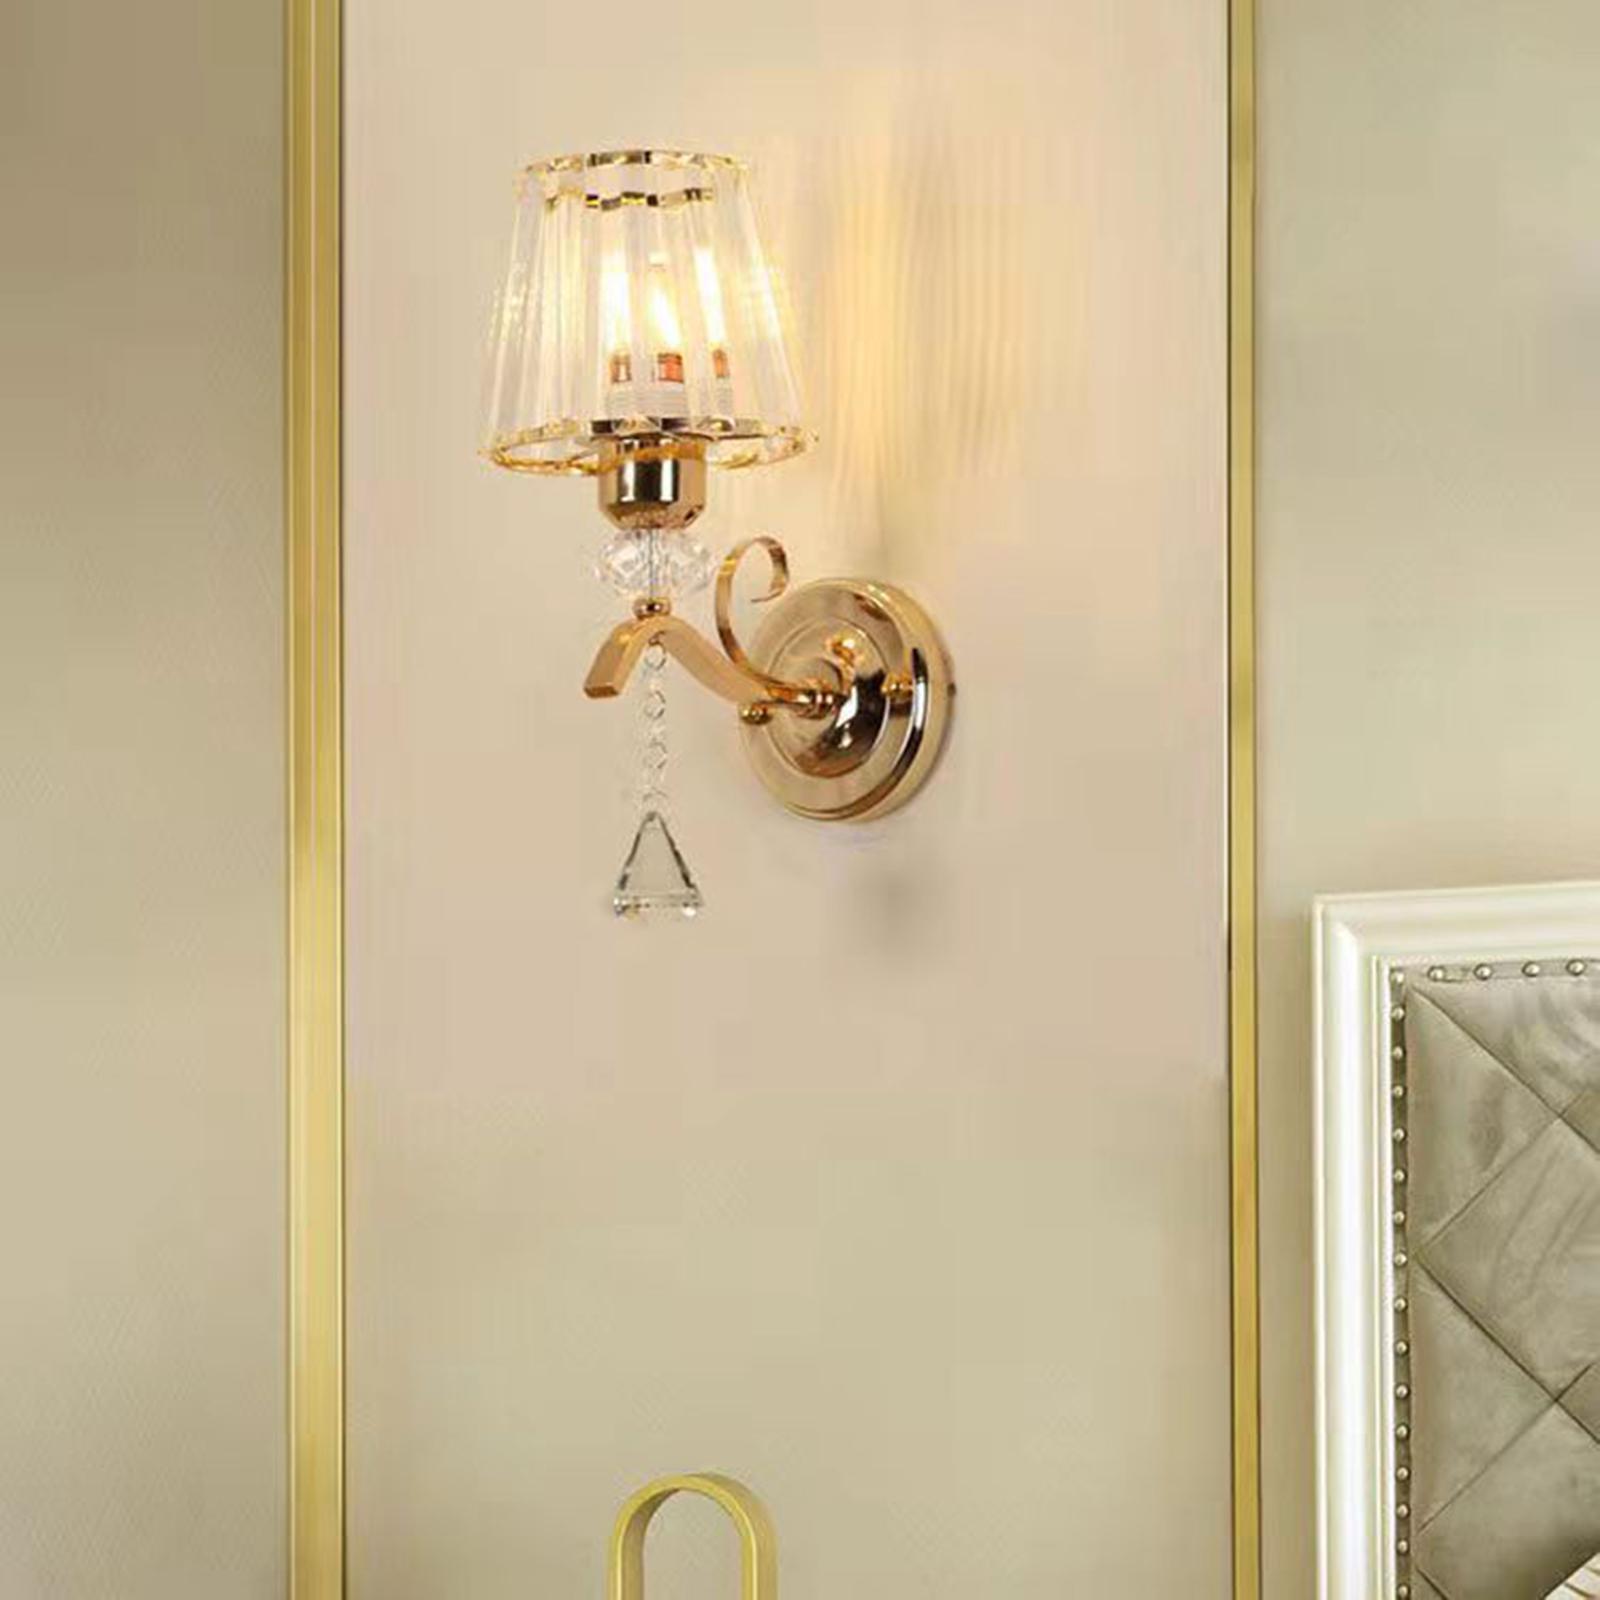 Modern LED Wall Light Sconce Light Fixtures Lighting Wall Mount Night Lamp for Corridor Bedroom Doorway Indoor Decoration